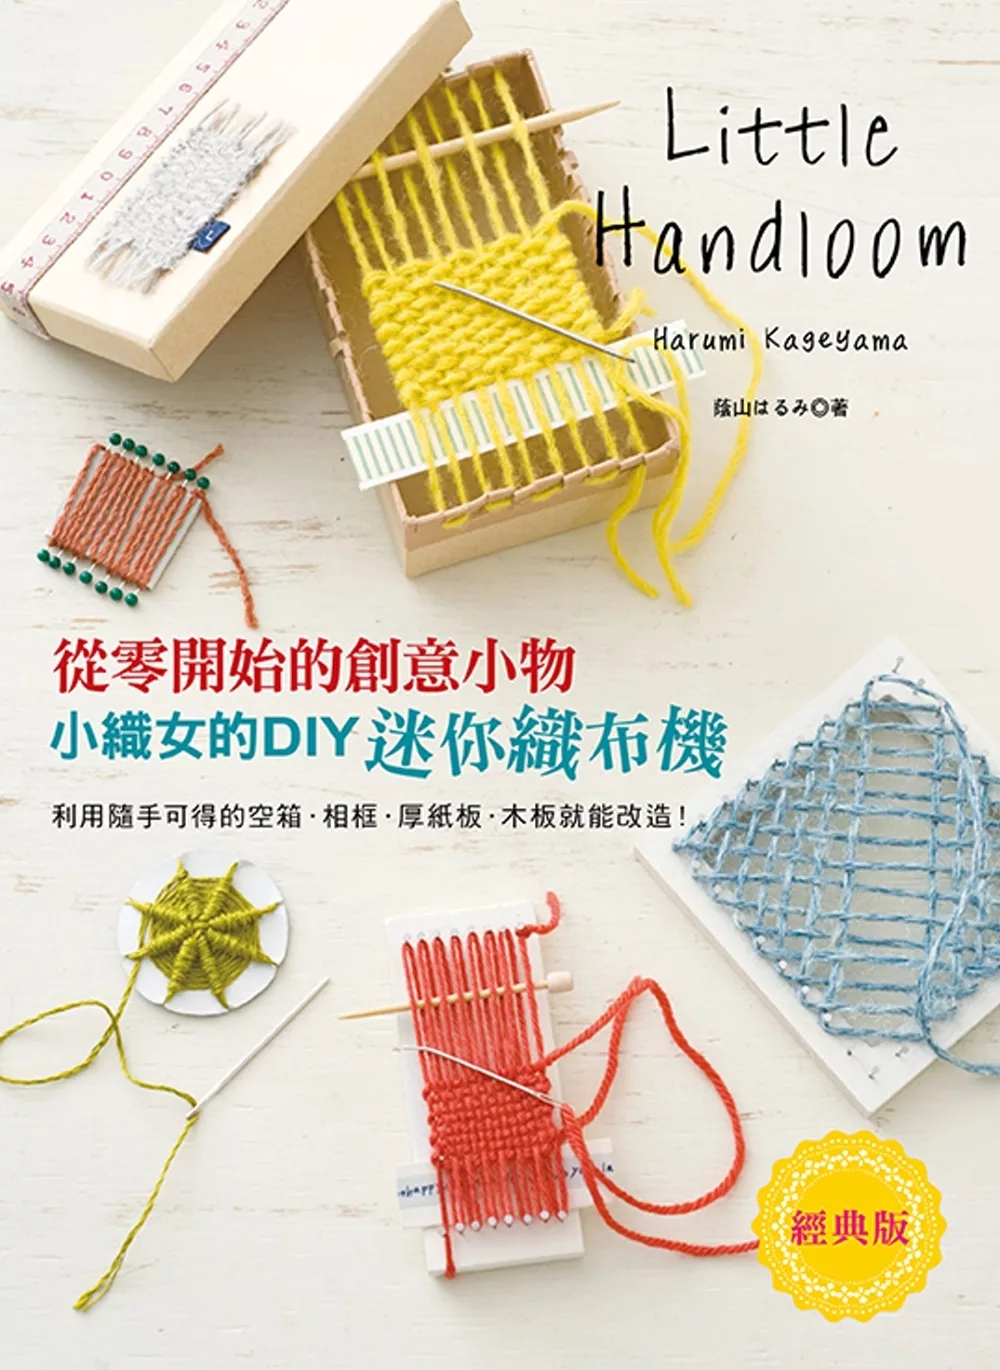 小織女的DIY迷你織布機(經典版): 從零開始的創意小物